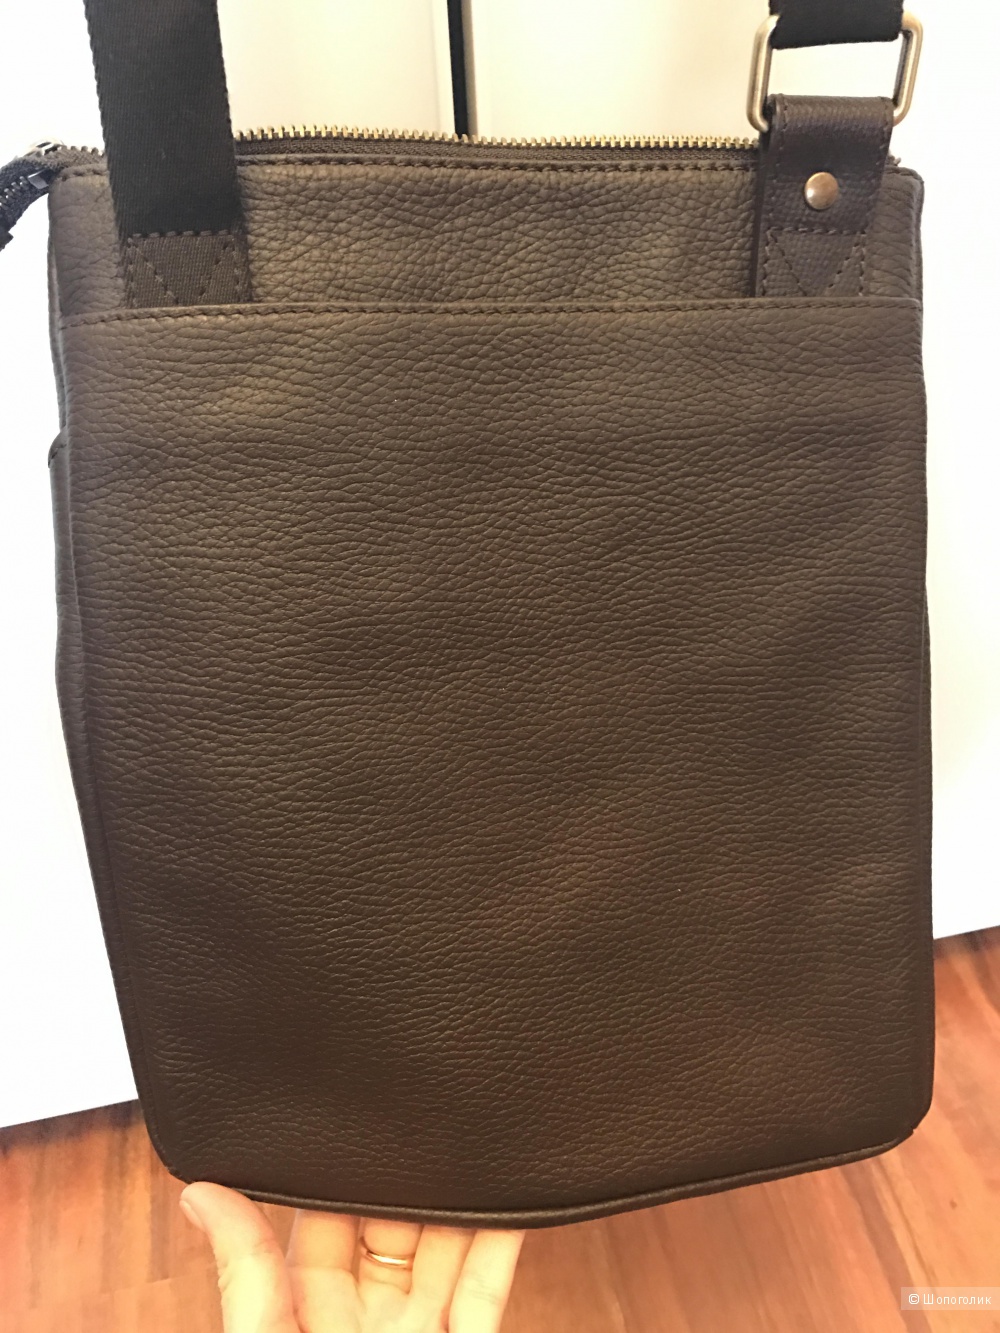 Новая кожаная мужская сумка-планшет цвет темно- коричневый фурнитура бронза бренд VF+ Подарок